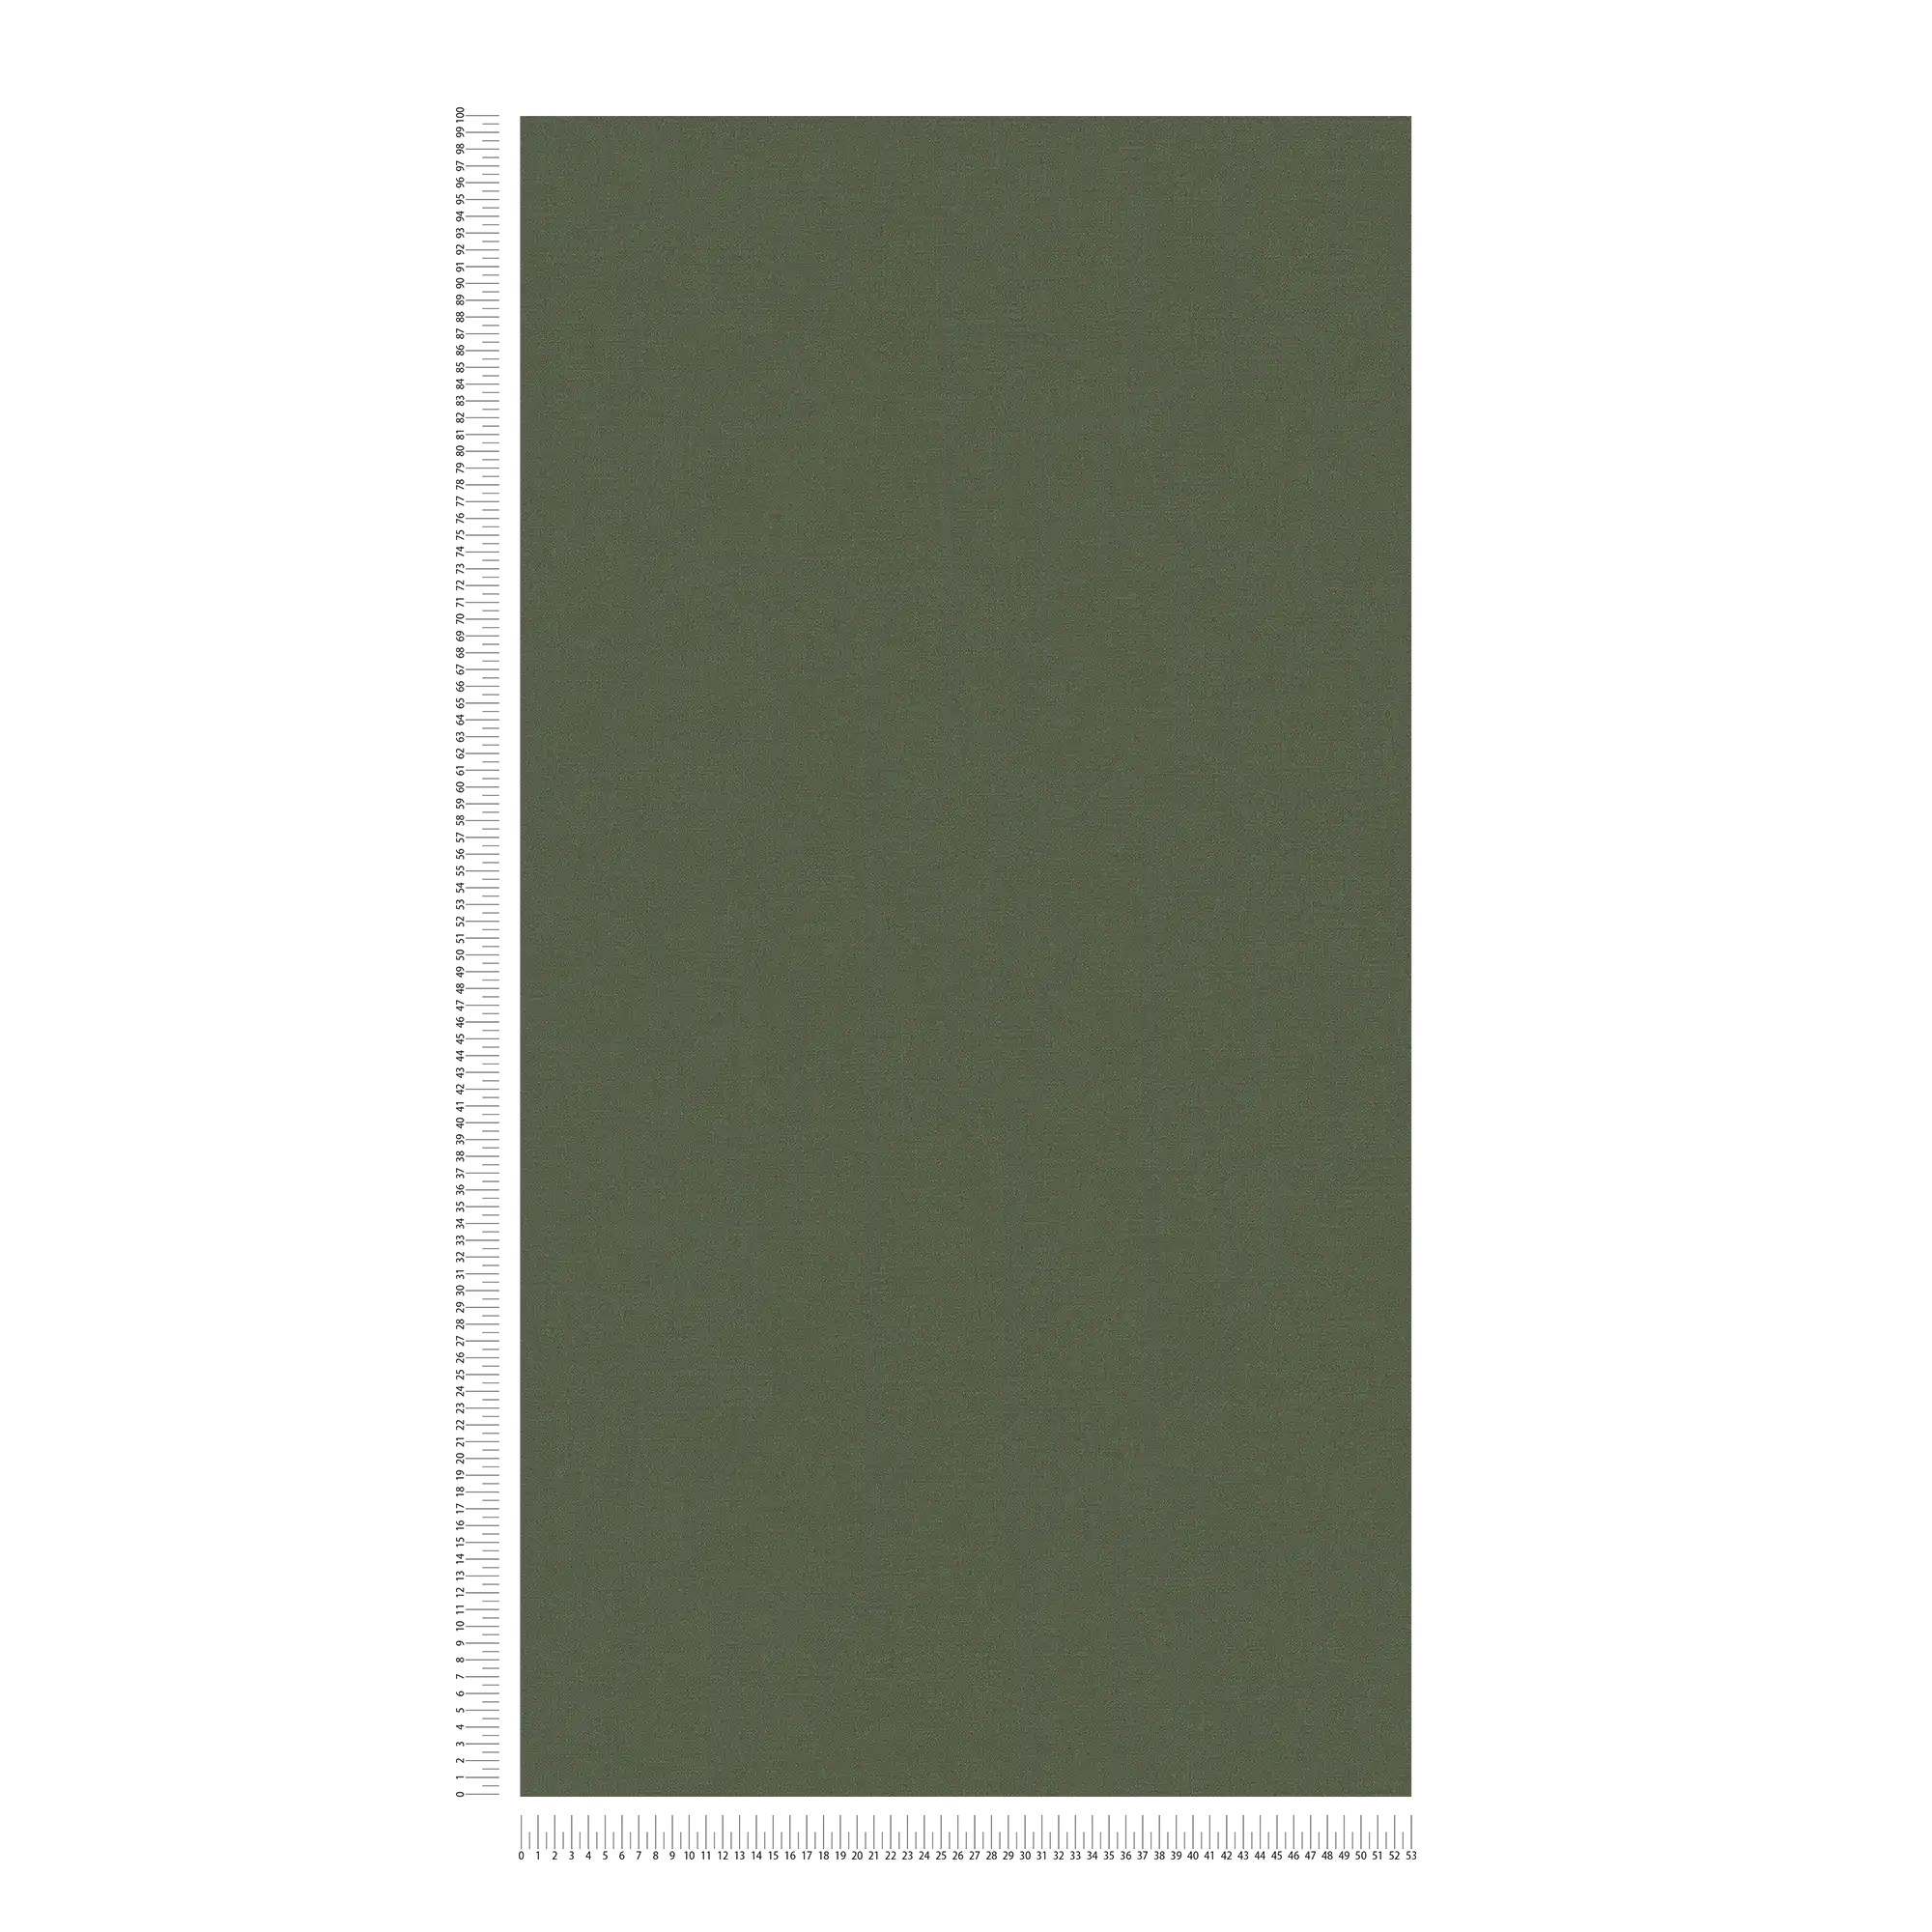             Einfarbige Vliestapete in auffälligen Farben – Grün
        